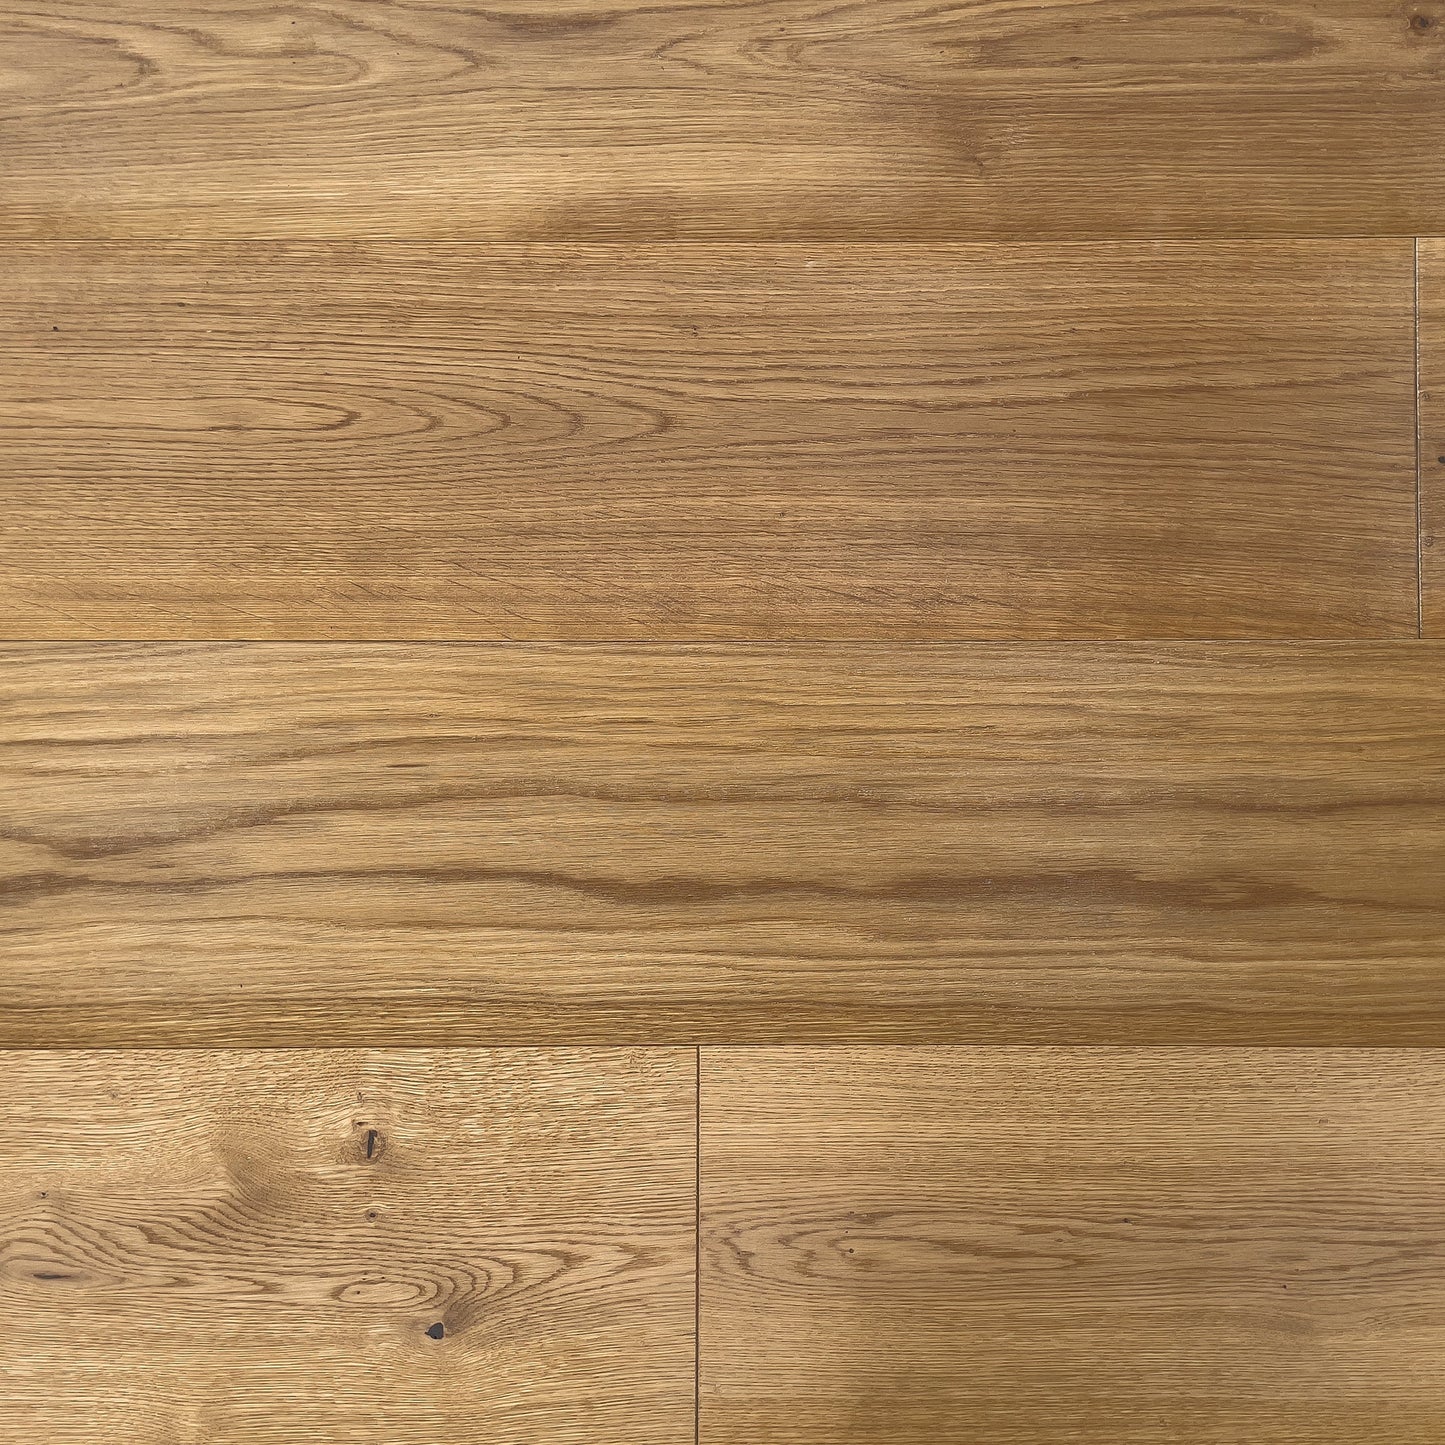 Pavimenti in legno Rovere Landlord, X-LARGE, oliato naturale - calma